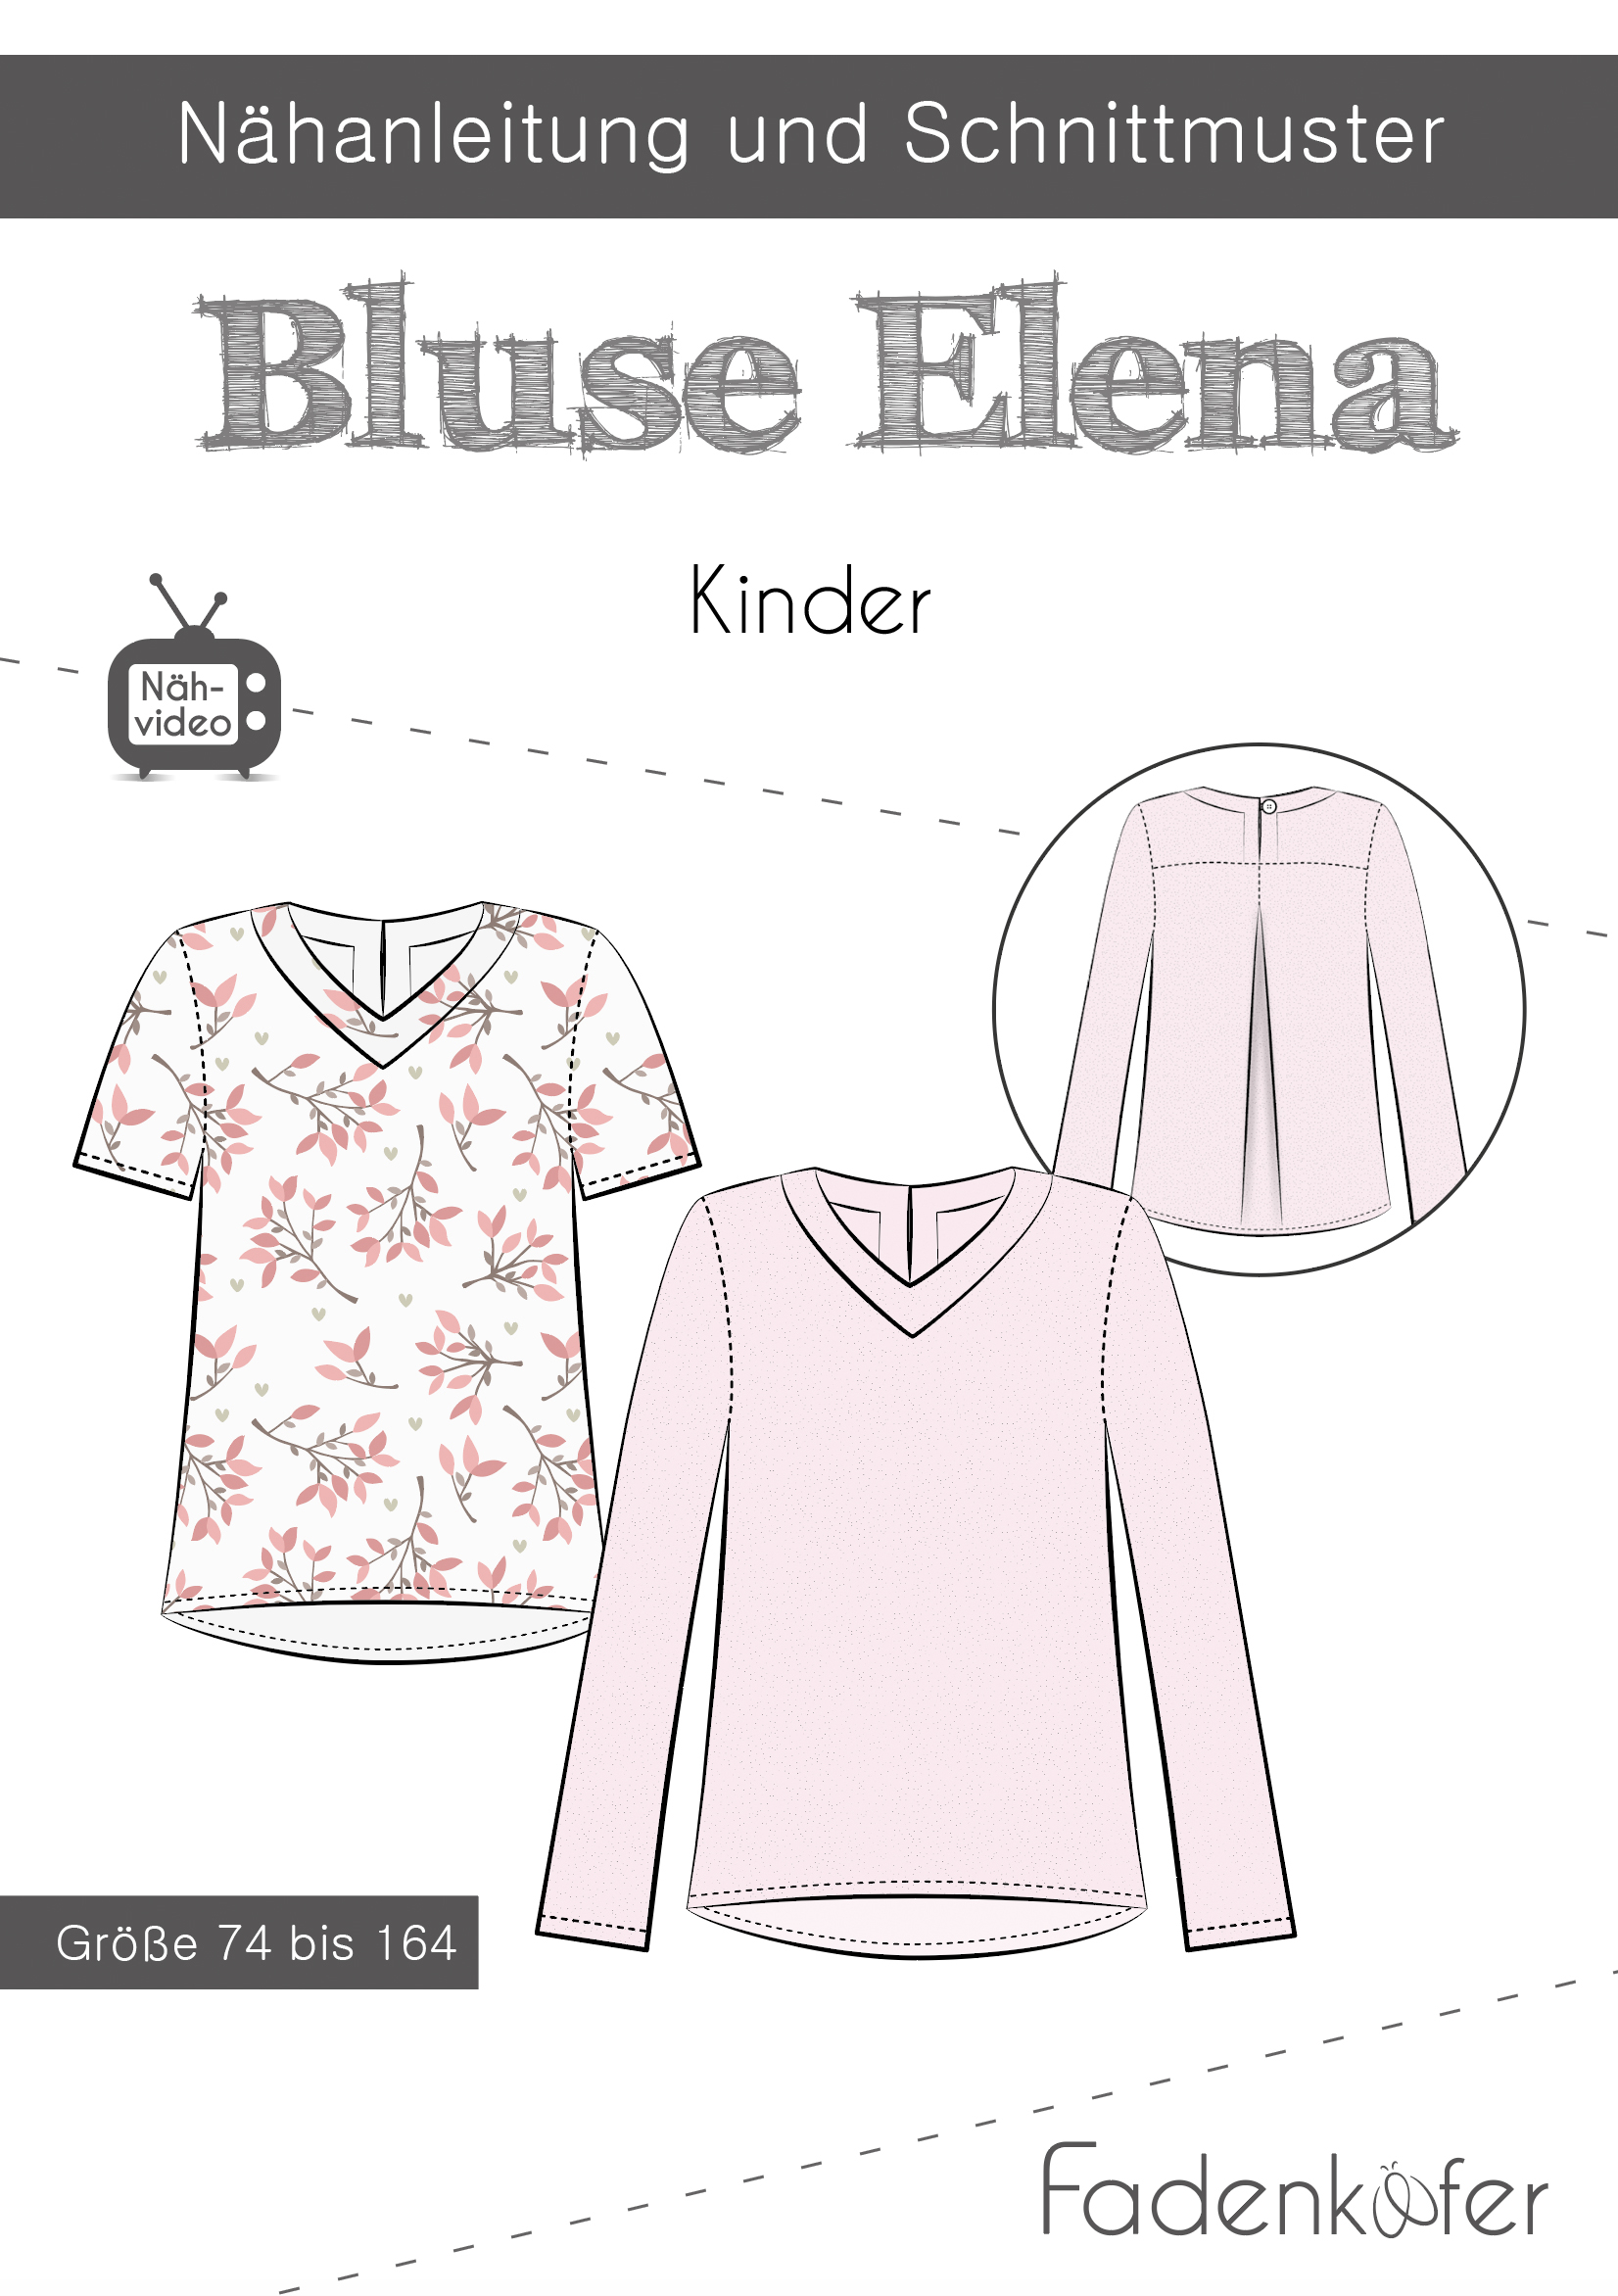 Papierschnittmuster Bluse Elena Kinder - Gr. 74-164 - Nähanleitung und Schnittmuster von Fadenkäfer 